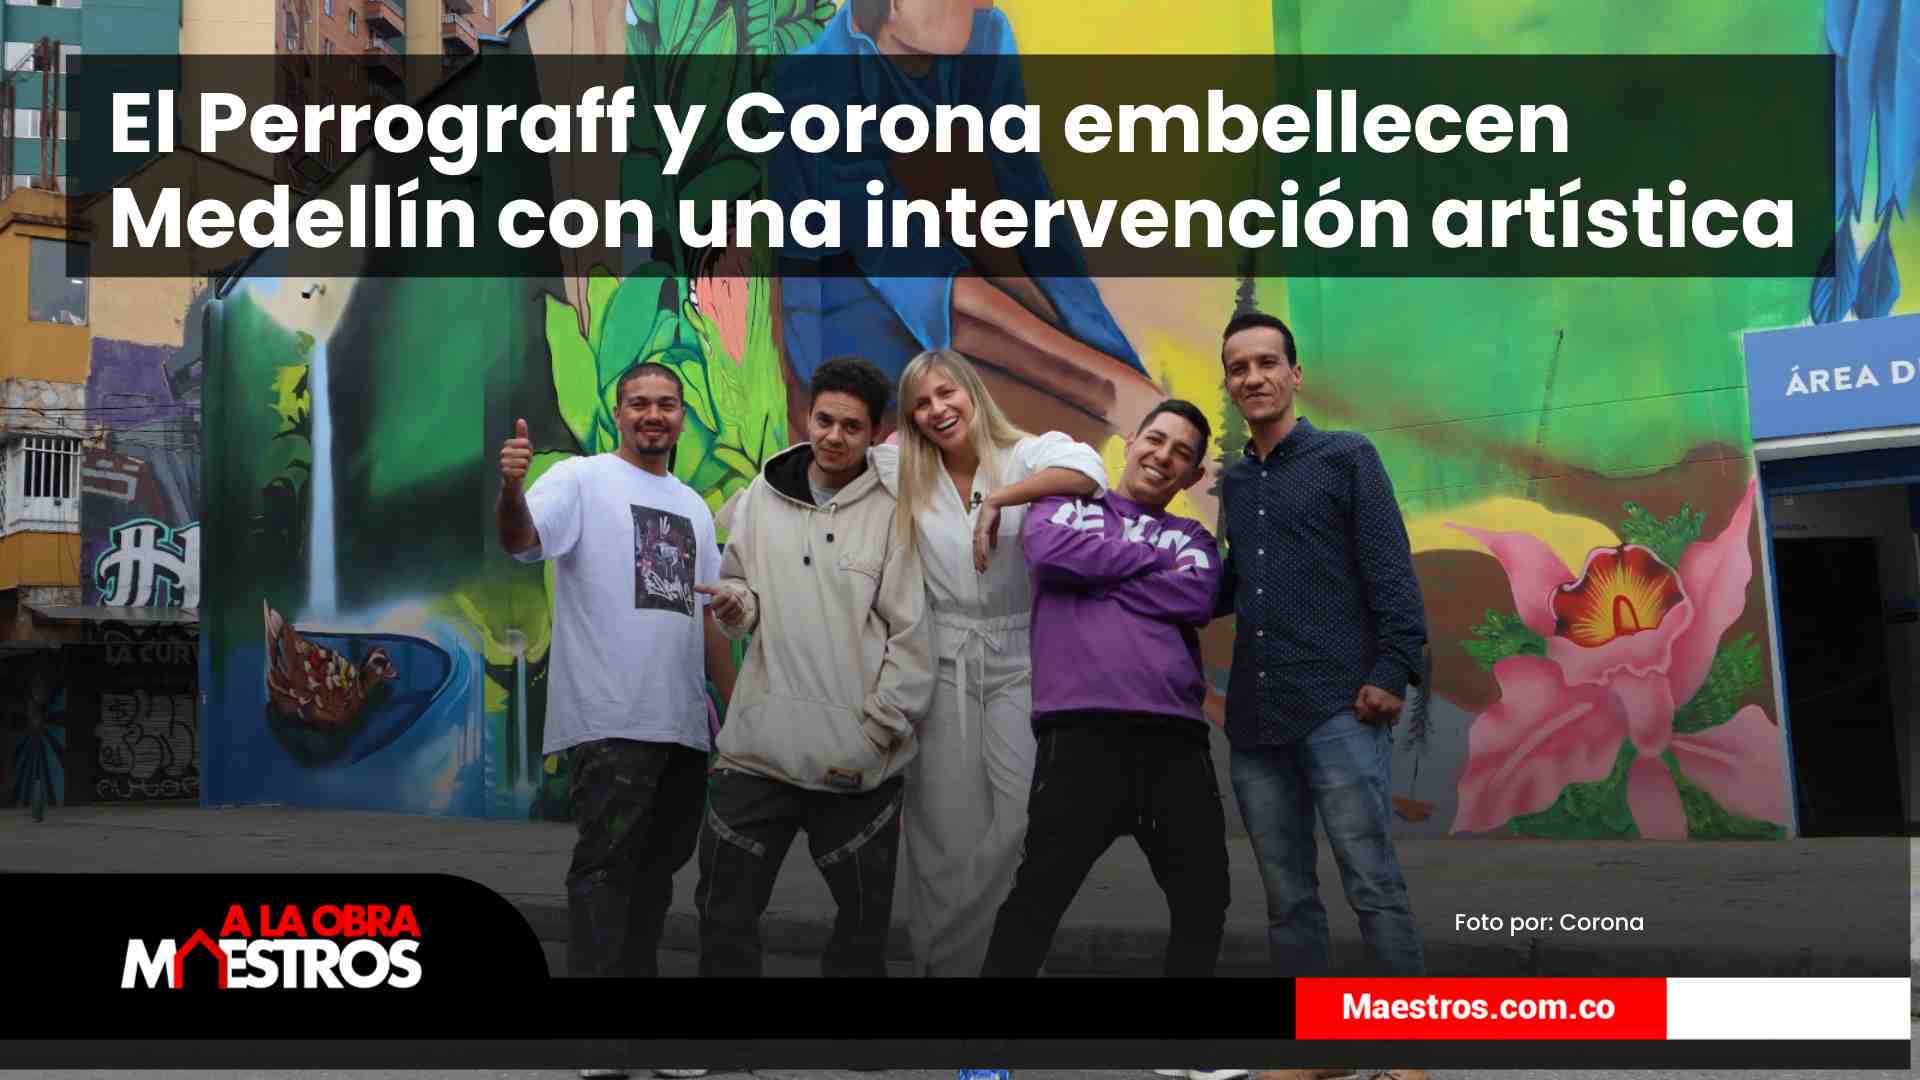 El-Perrograff-y-Corona-embellecen-Medellin-con-una-intervencion-artistica-a-la-obra-maestros